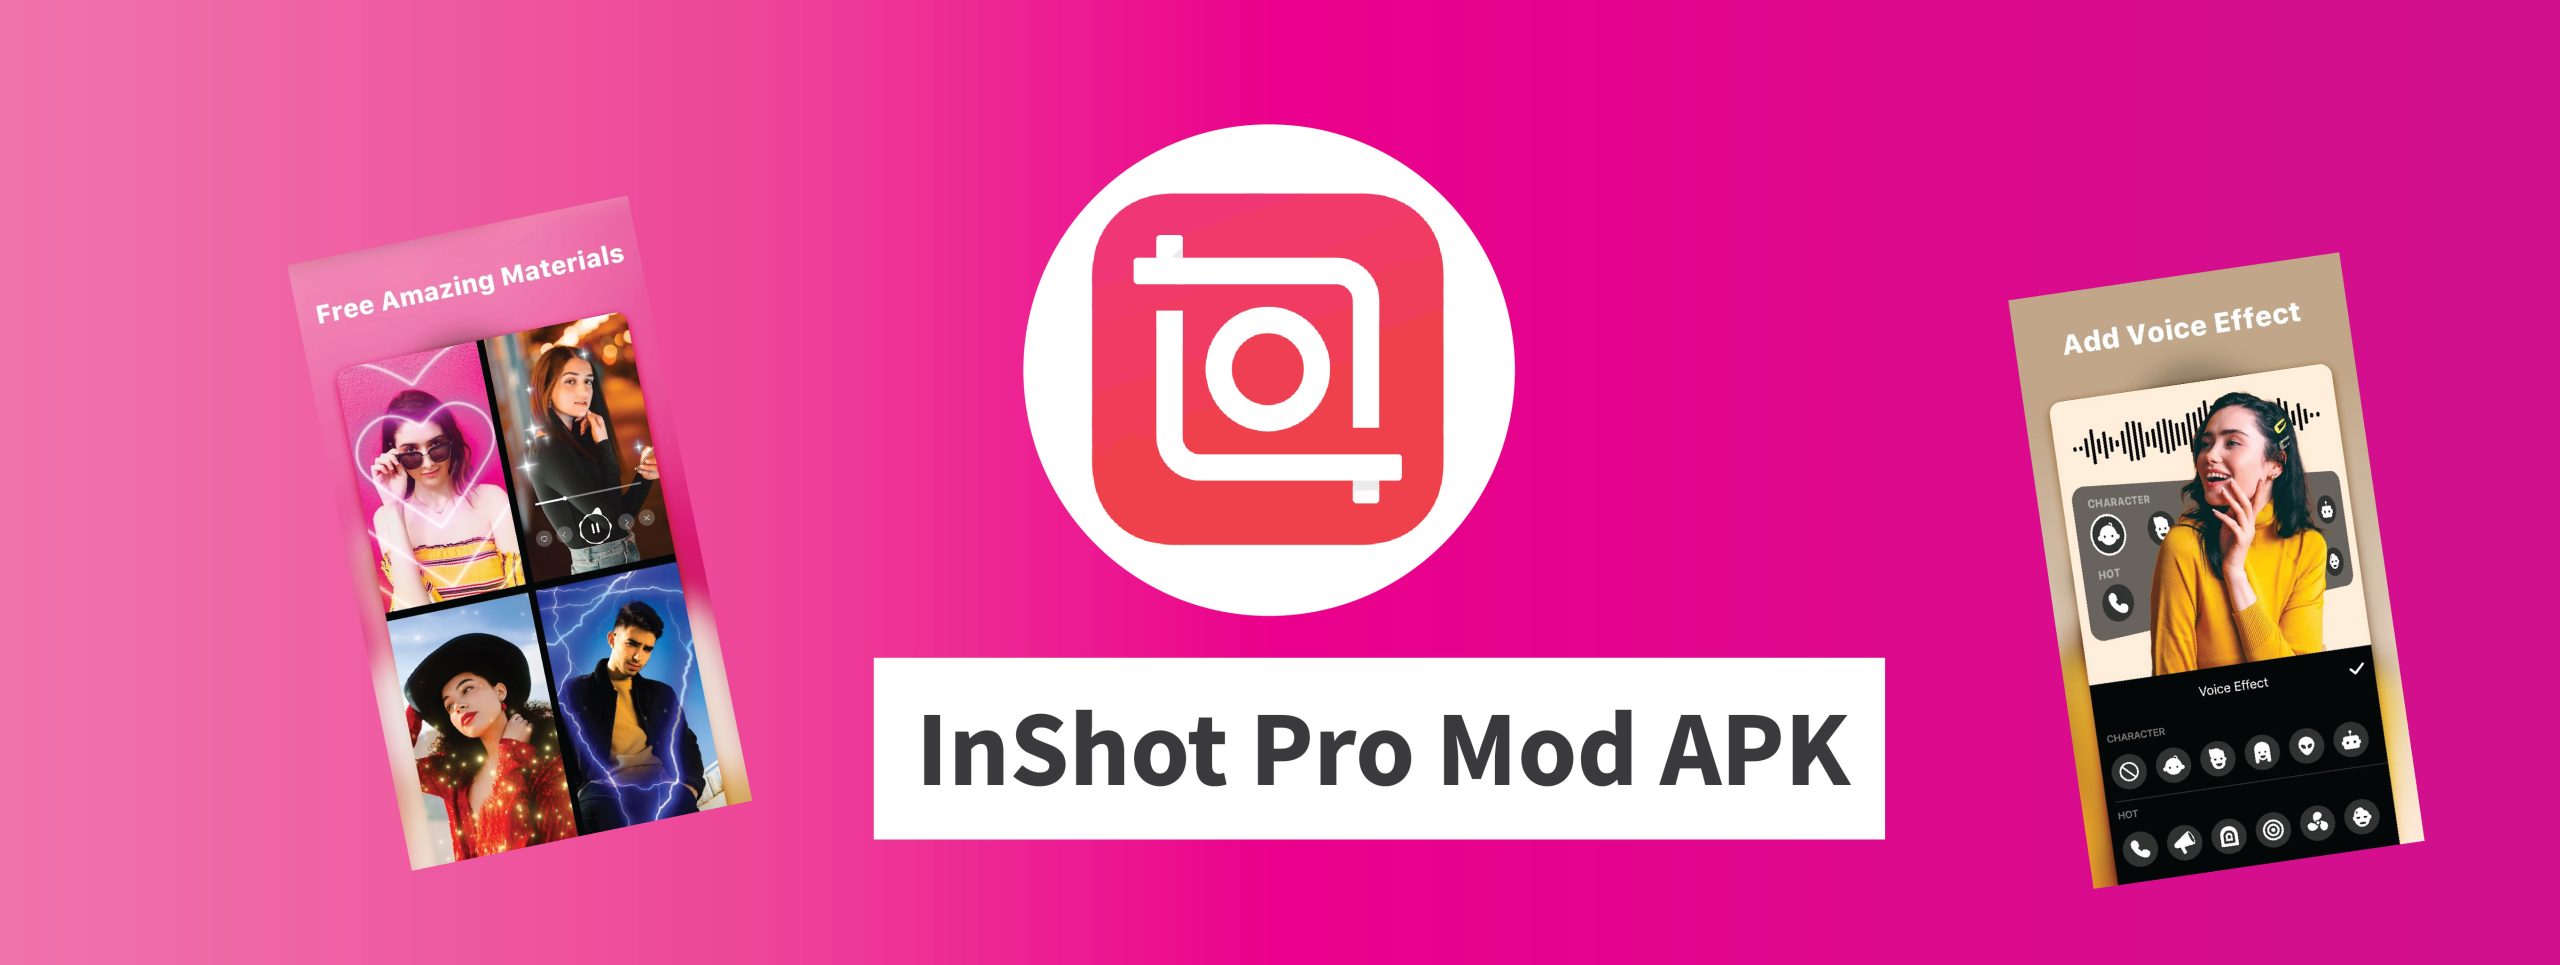 Video Editor & Maker - InShot Mod Apk